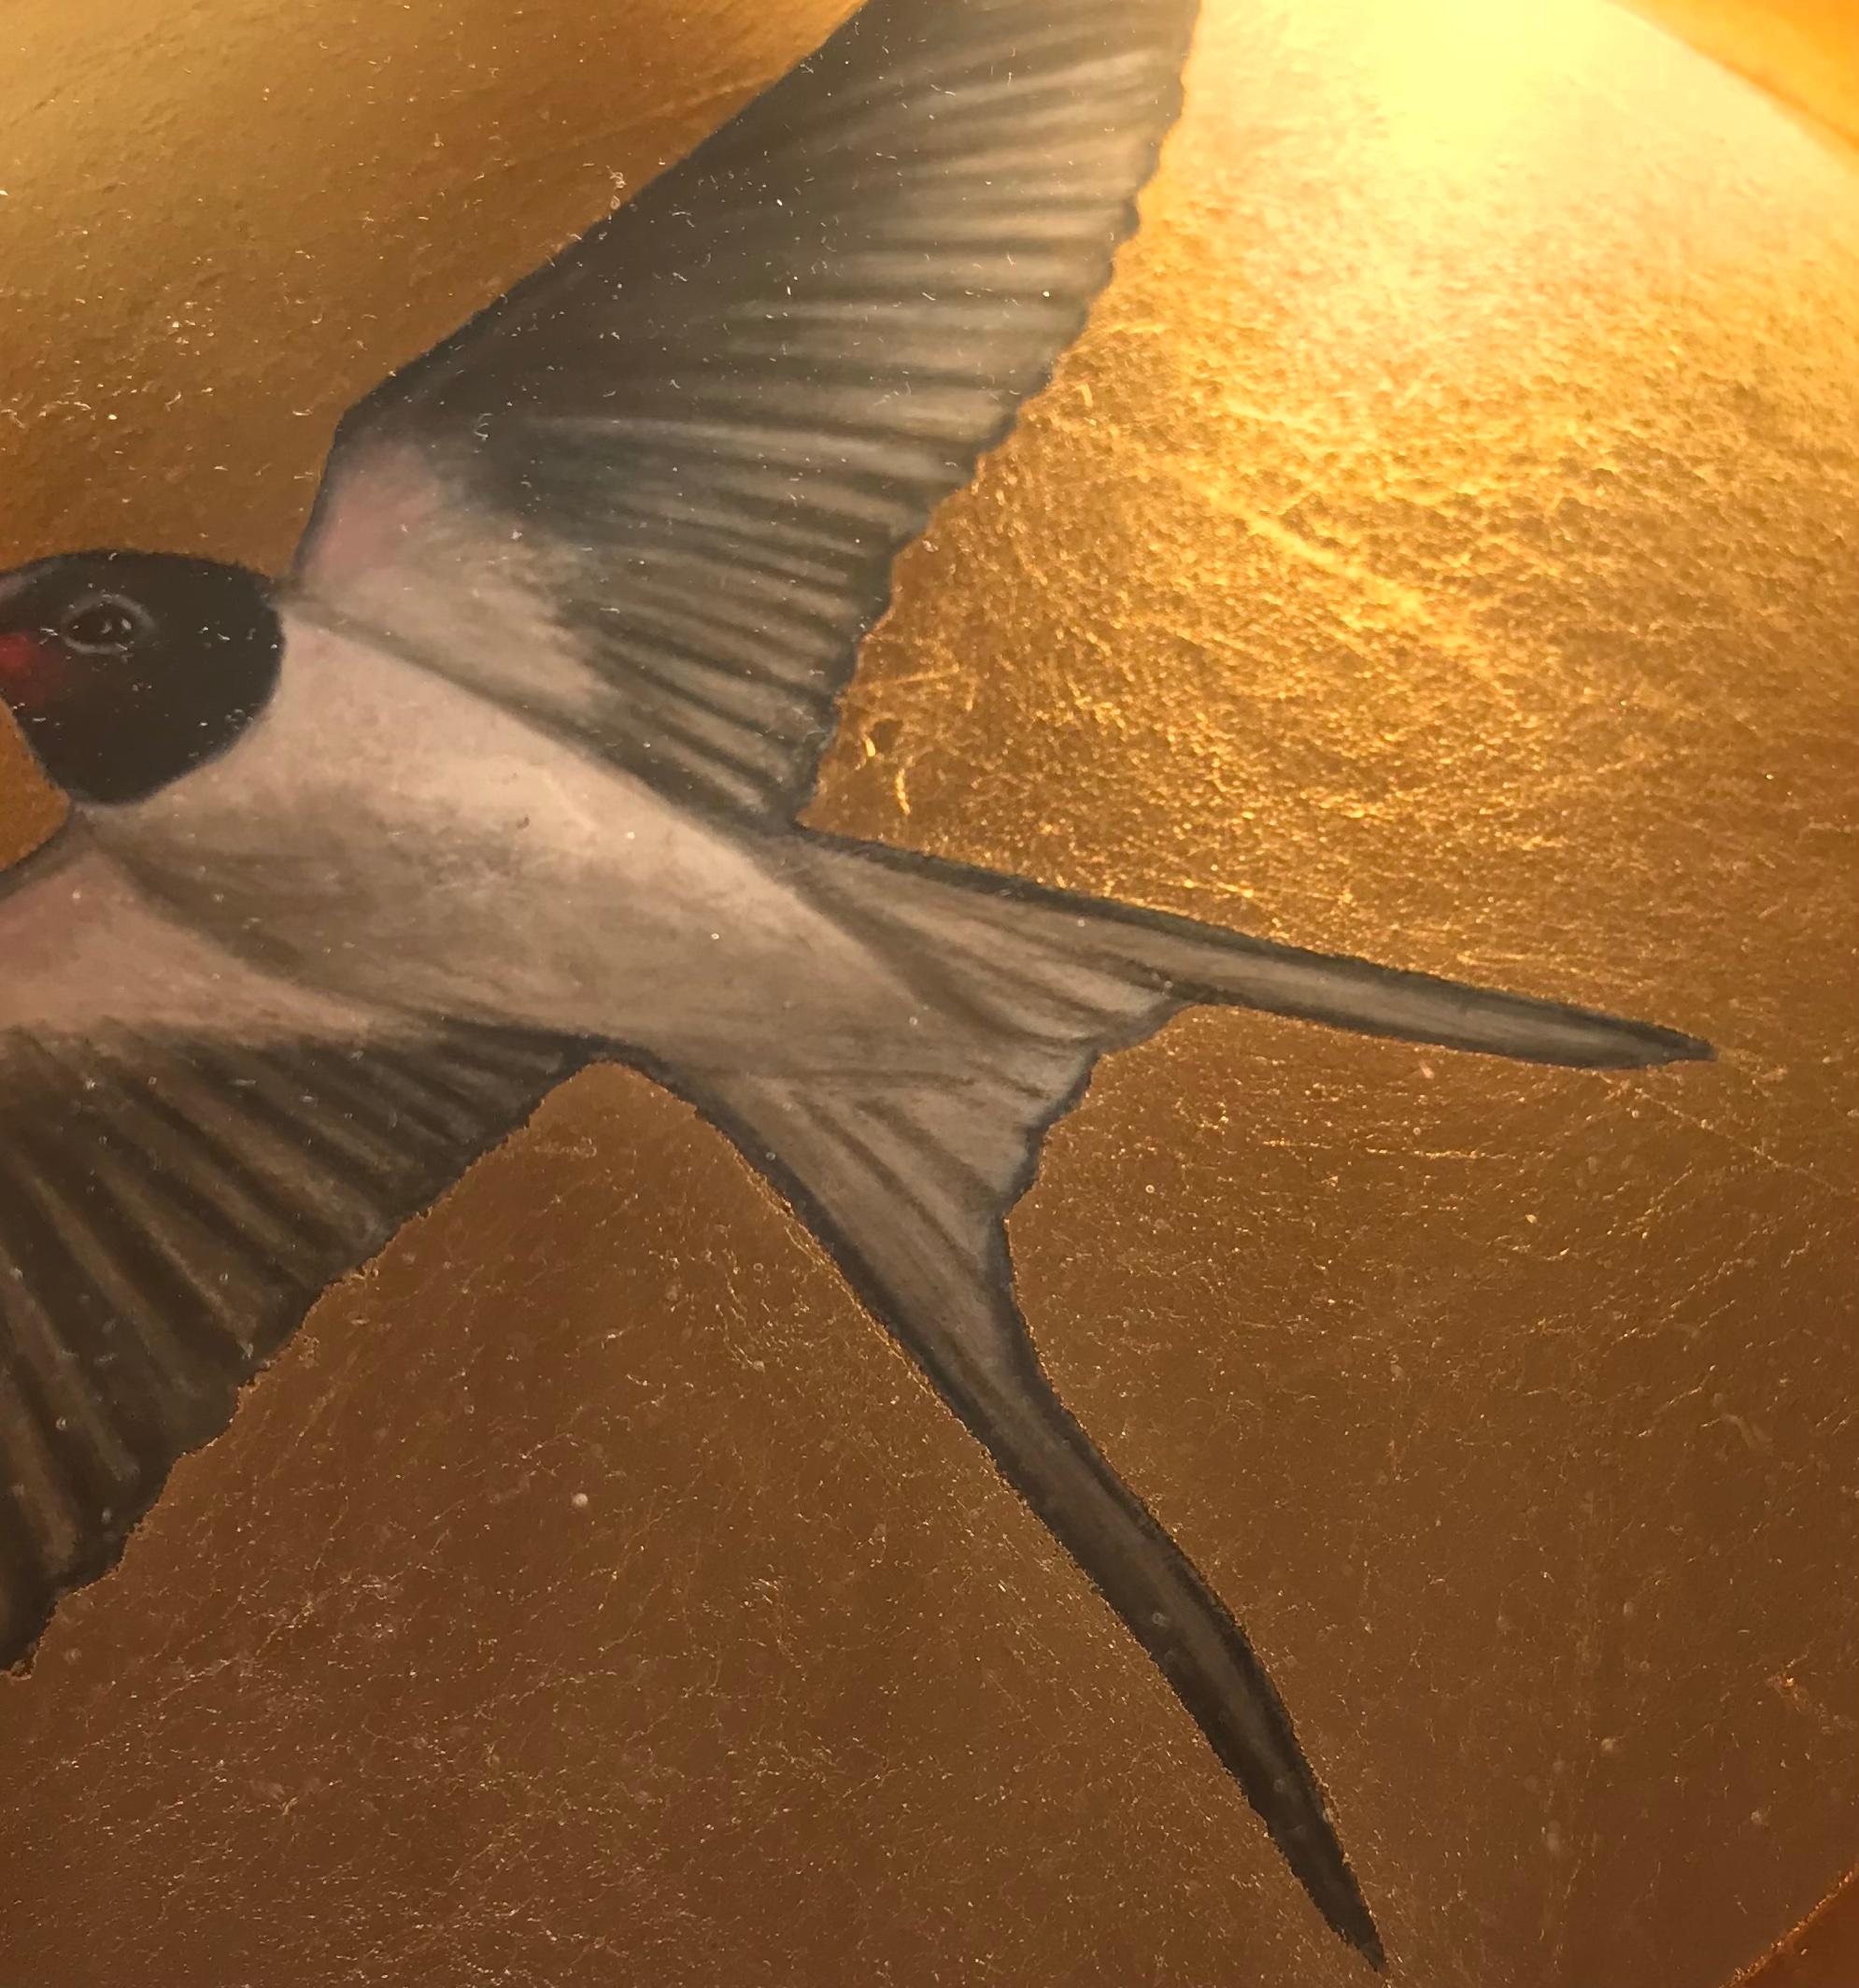 Die eindrucksvollen Arbeiten von Sally-Ann Johns zeigen oft alltägliche Vögel und Tiere, manchmal auch Porträts, die auf einzigartige und spannende Weise dargestellt werden. In einer mit Gold ausgekleideten Schachtel beschwören sie Bilder alter